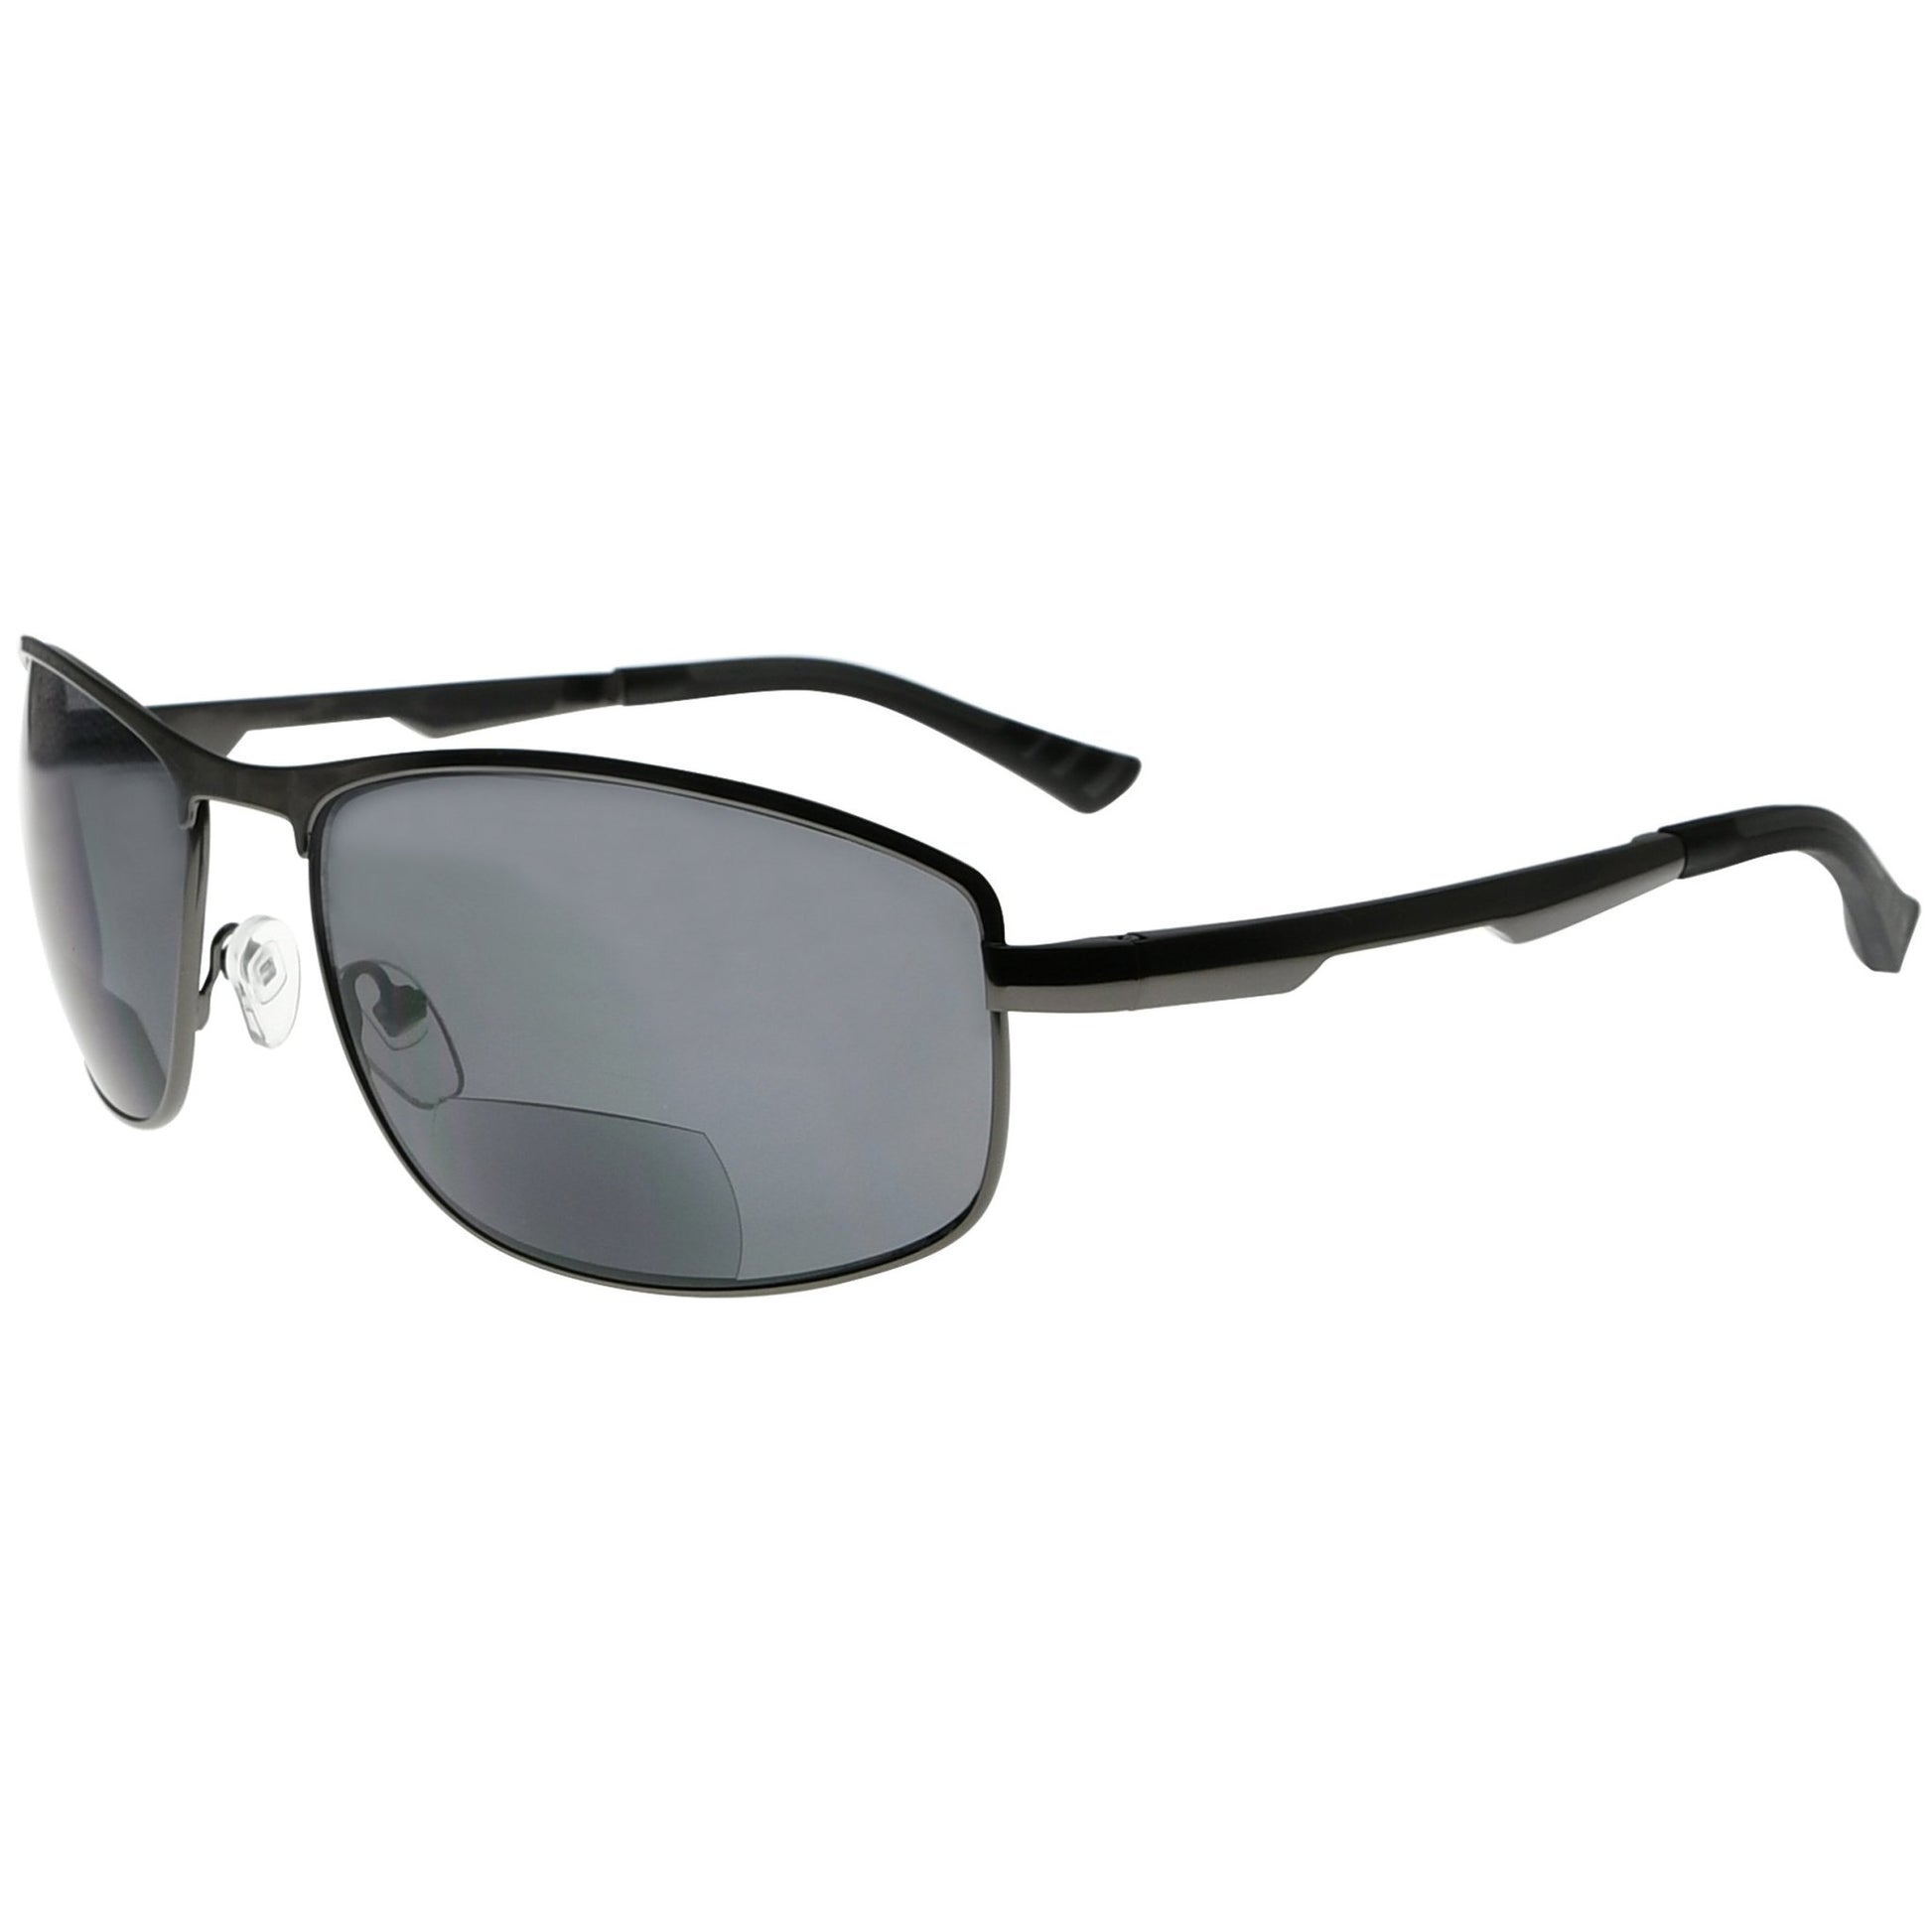 Bifocal Sunglasses Readers Outdoor SG801